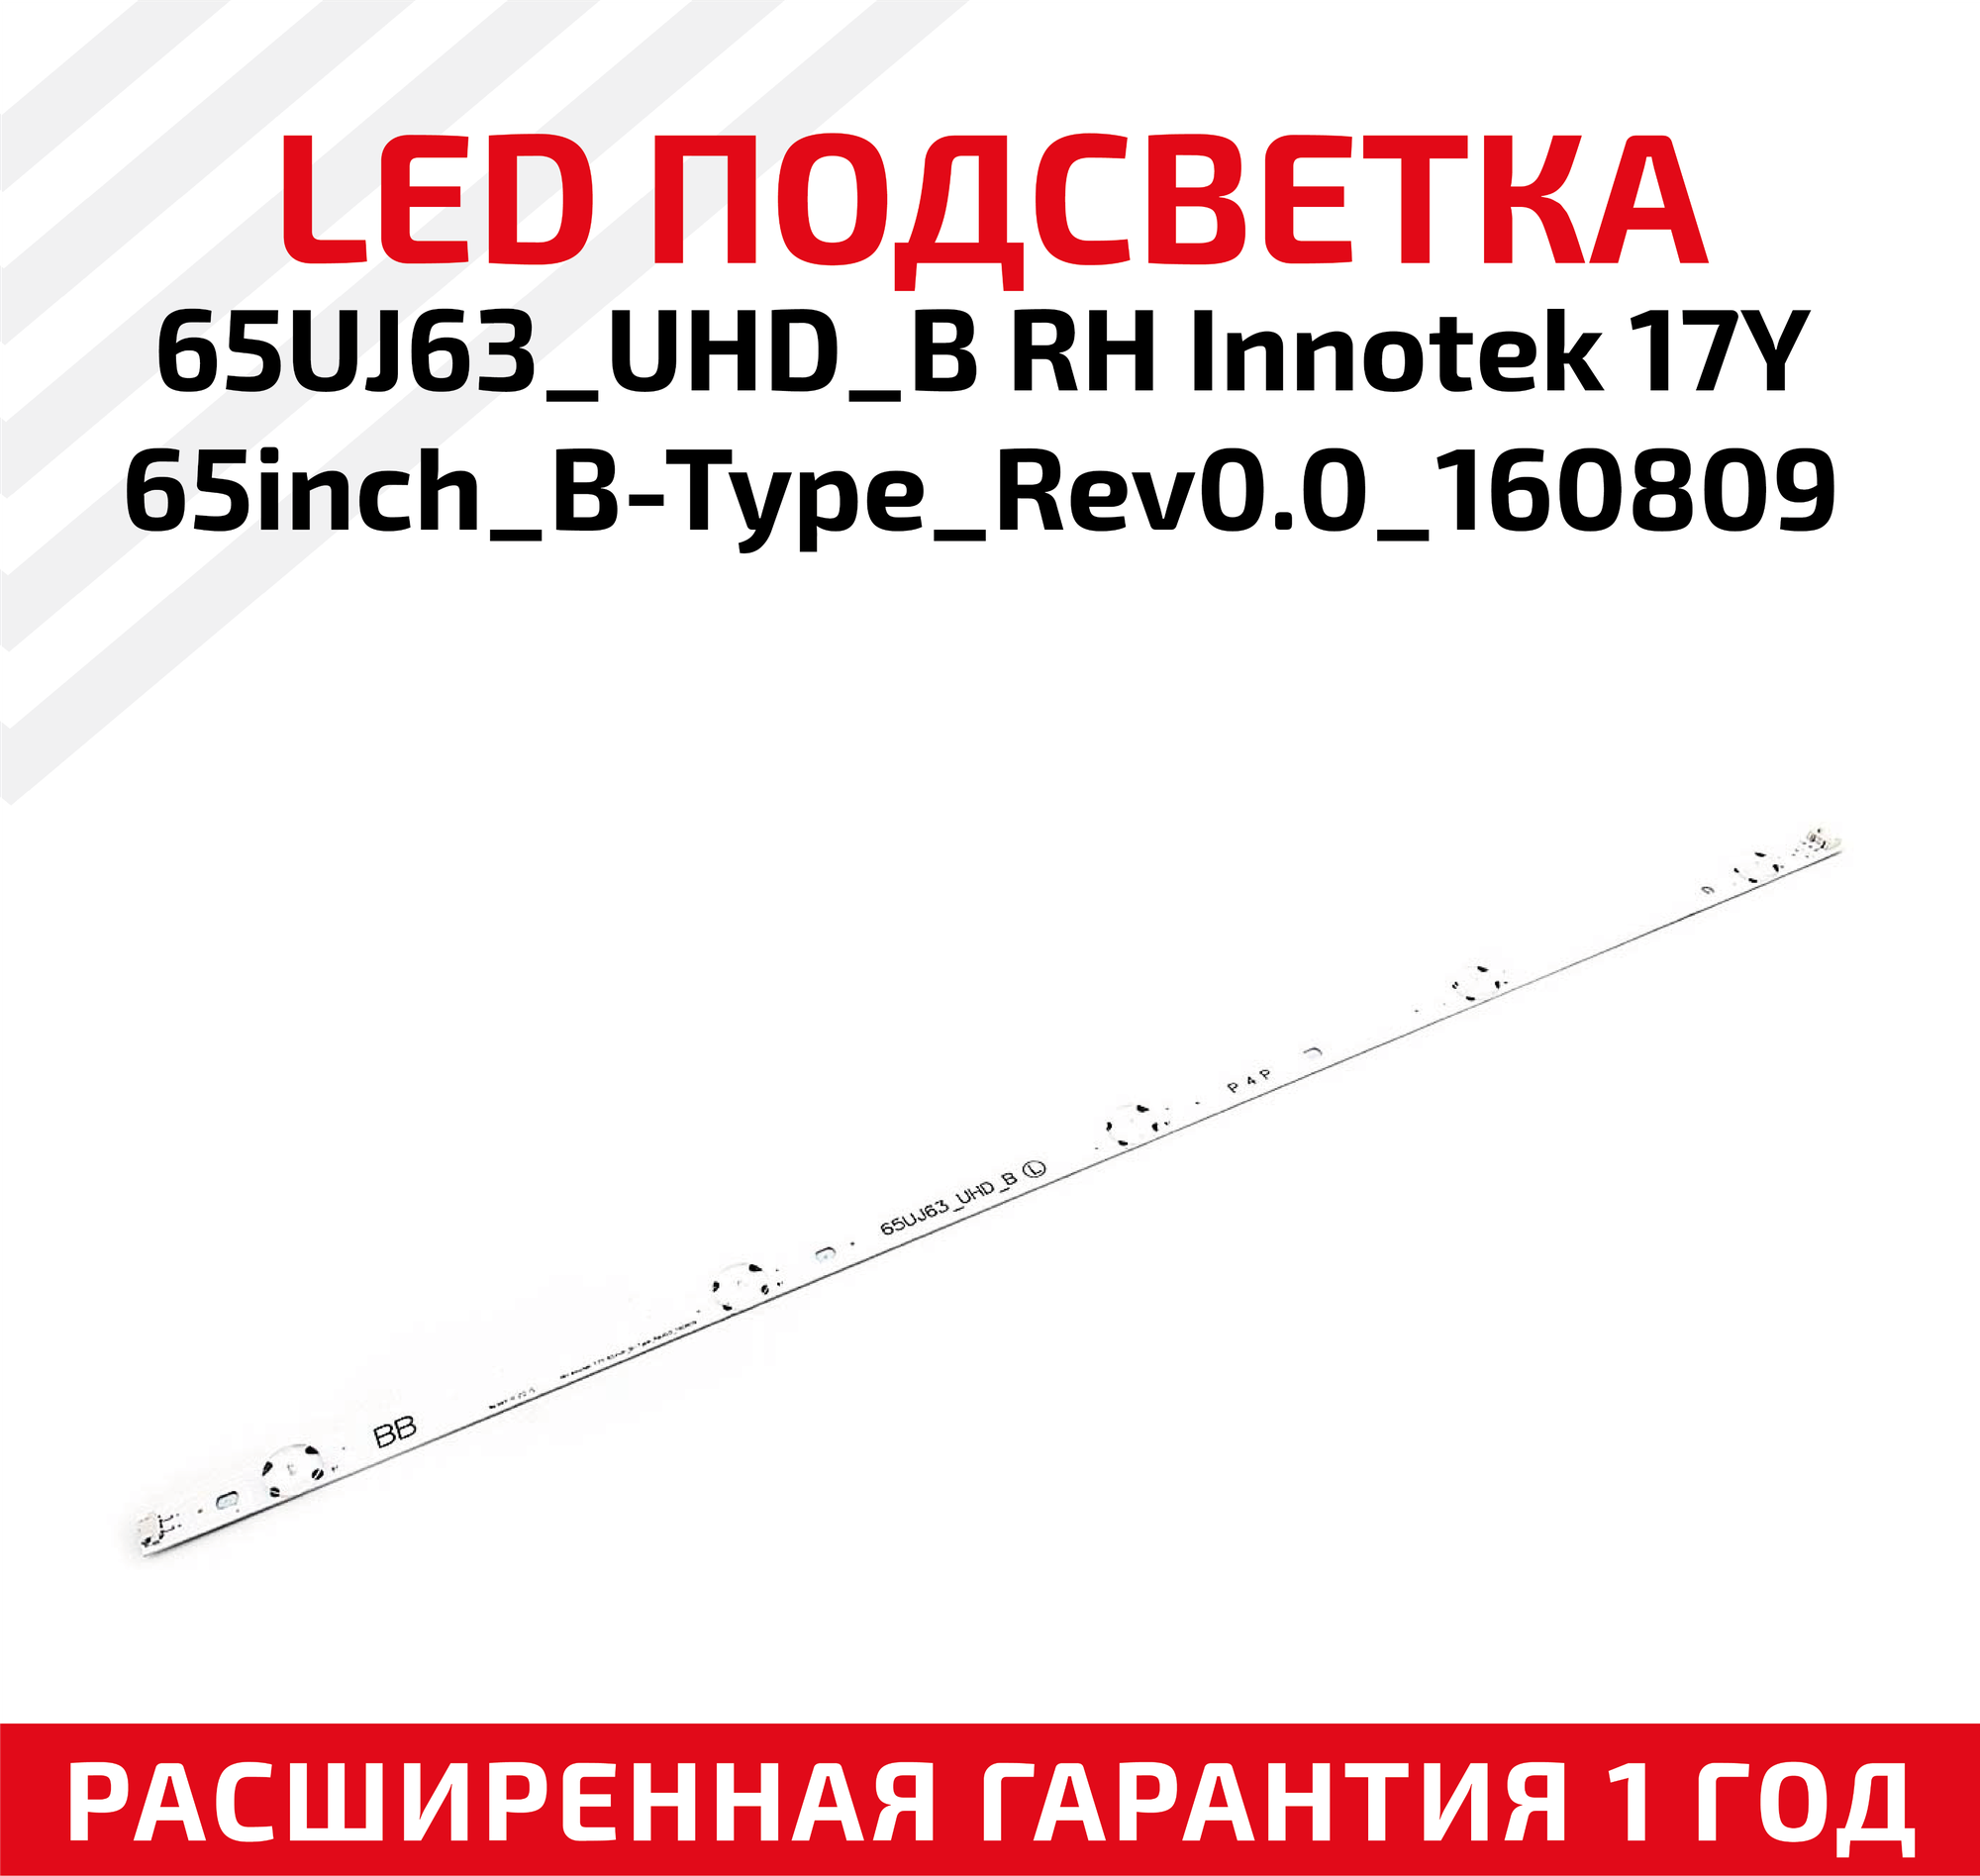 LED подсветка (светодиодная планка) для телевизора 65UJ63_UHD_B RH InnoteK 17Y 65inch_B-Type_Rev0.0_160809